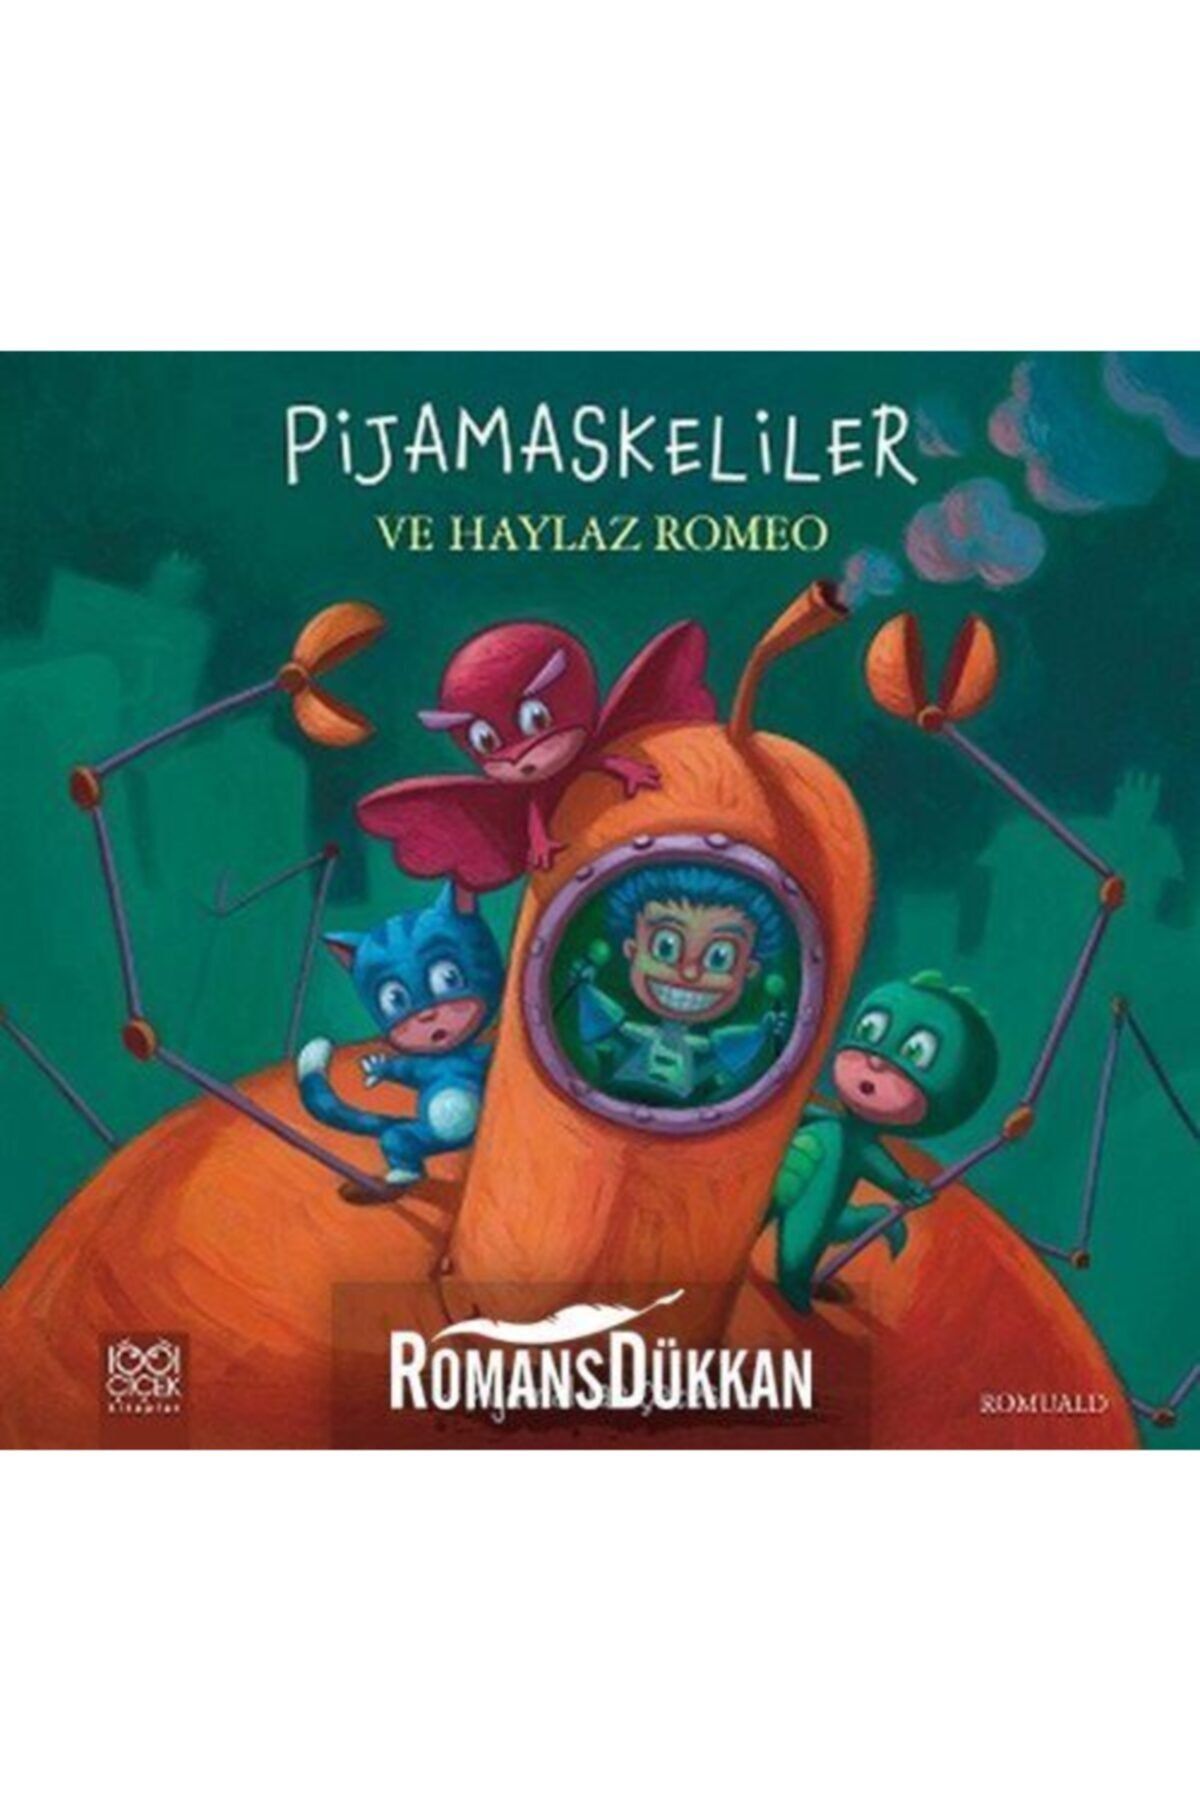 1001 Çiçek Kitaplar Pijamalılar Çetesi - Pijamaskeliler Ve Haylaz Romeo